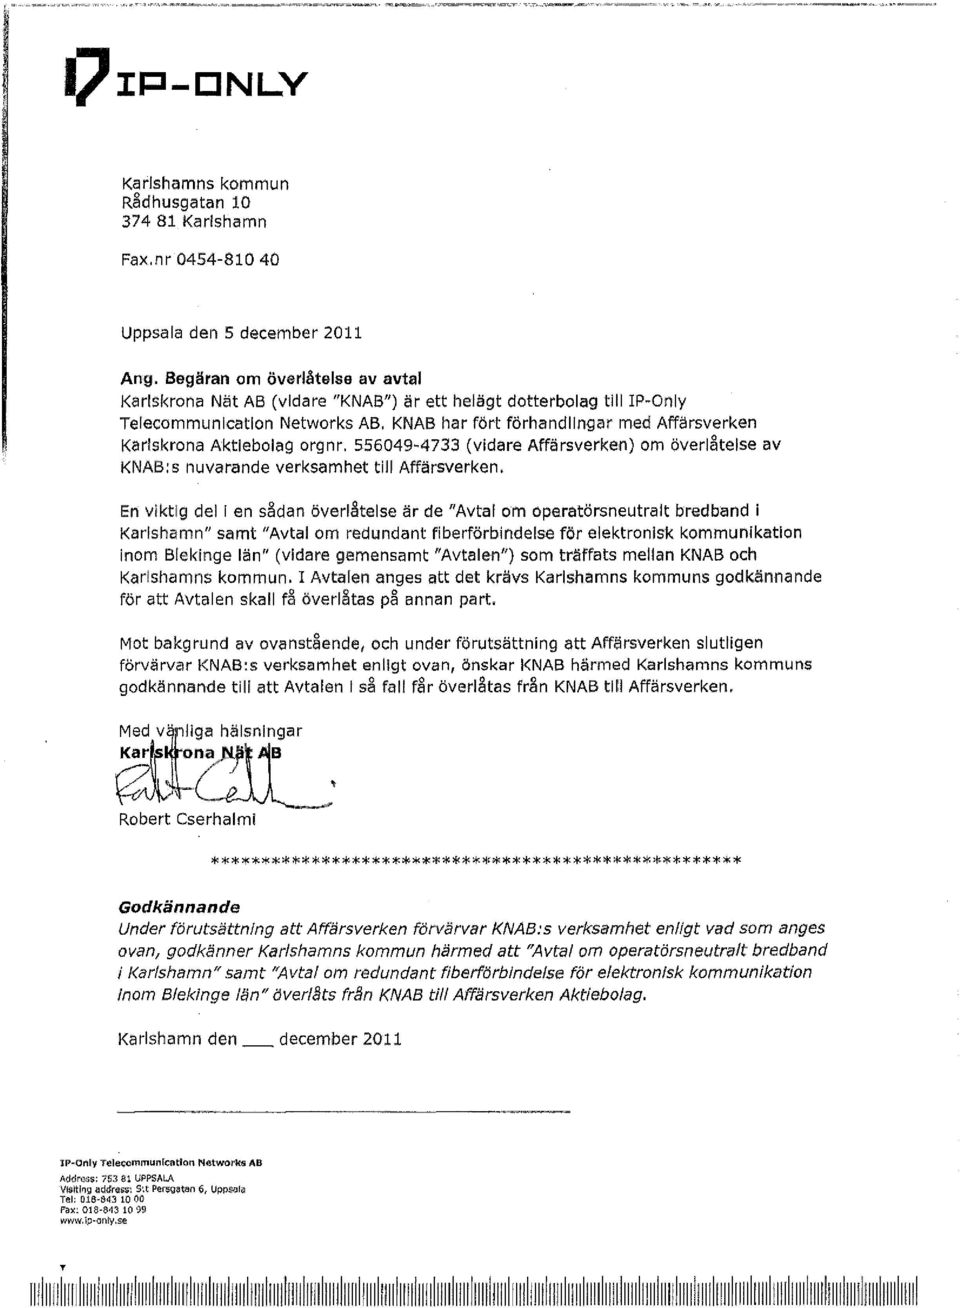 KNAB har fört förhandlingar med Affärsverken Karlskrona Aktiebolag orgnr. 556049-4733 (vidare Affärsverken) om överlåtelse av KNAB:s nuvarande verksamhet till Affärsverken.